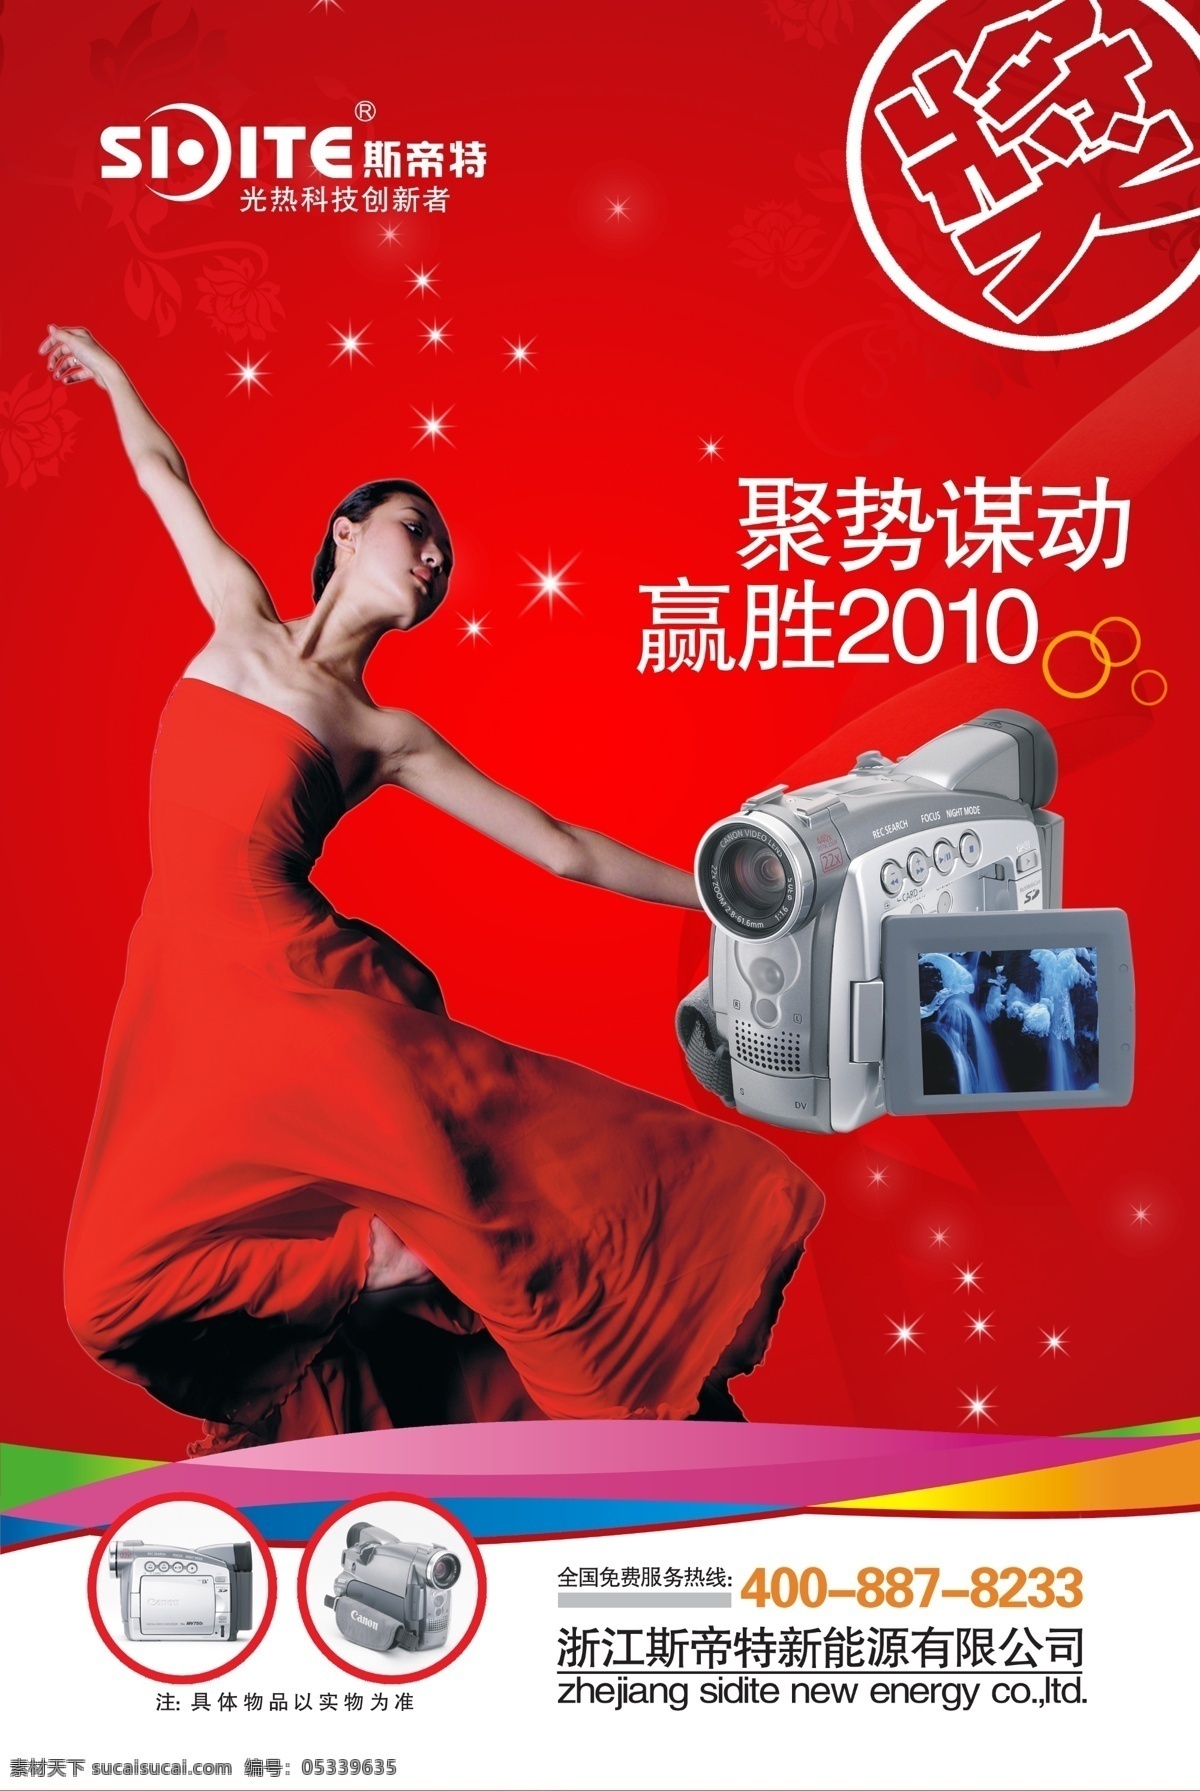 斯 帝 特 数码 摄像机 海报 斯帝特 红色 中国风 星光 产品展示 艺术 跳舞女人 数码摄像机 摄像机广告 海报图片 广告图片 创新者 分层素材 psd素材